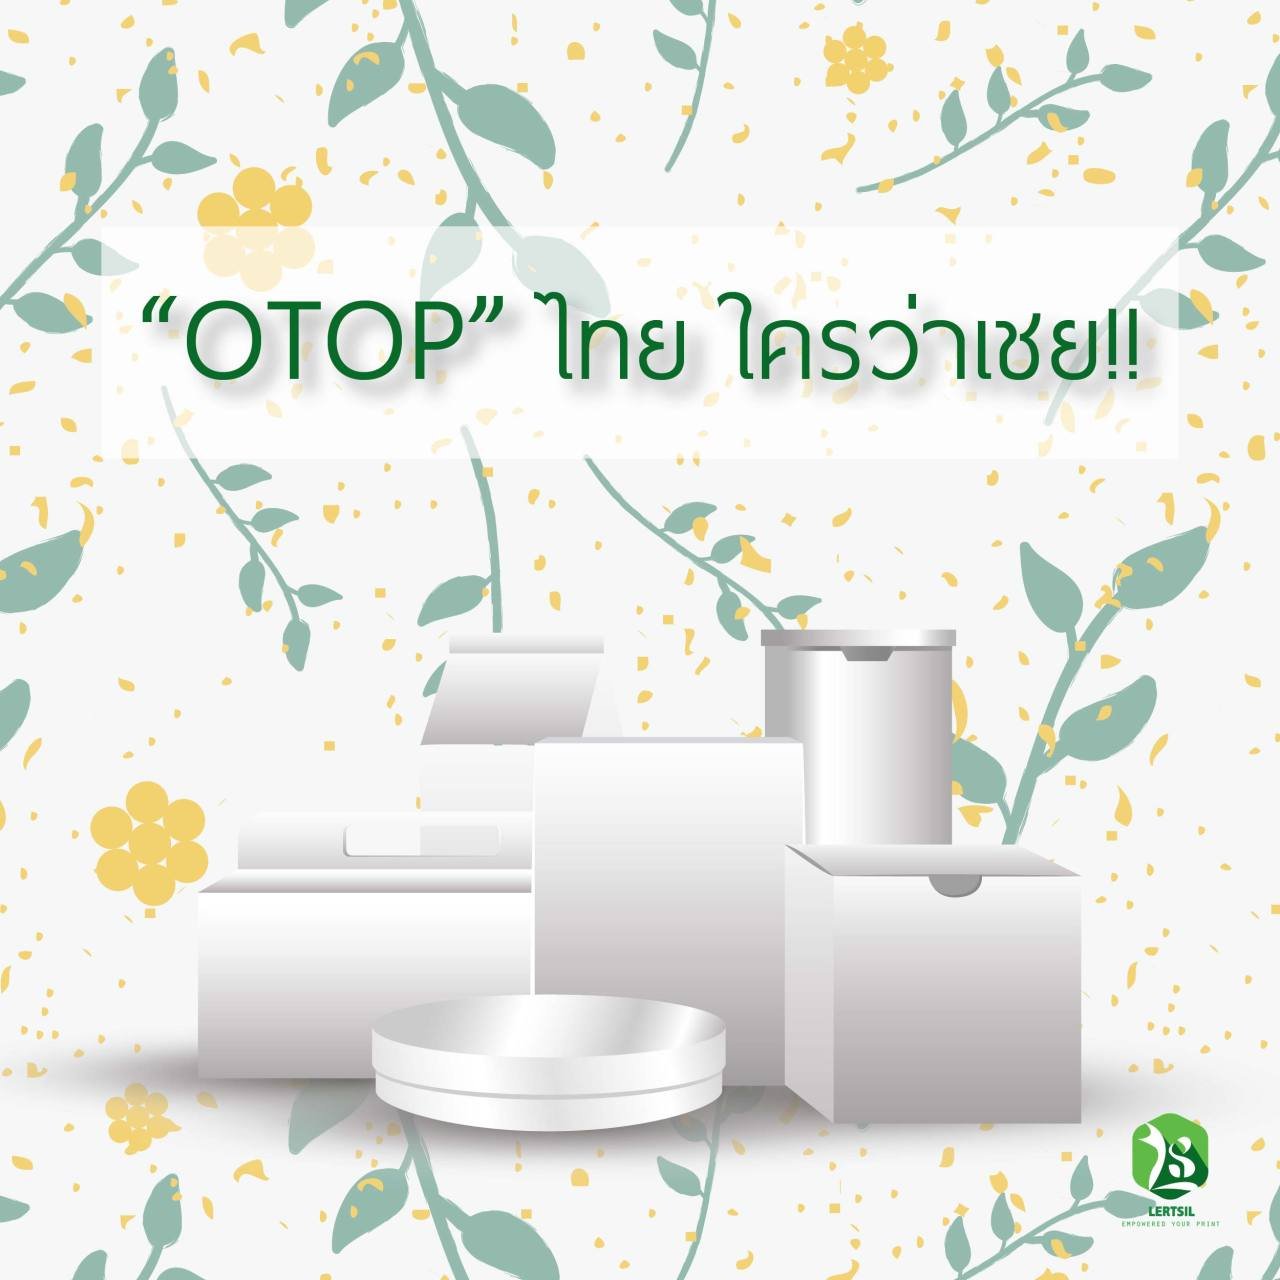 OTOP ไทยใครว่าเฉย ชวนดูสินค้าเเละภูมิปัญญาไทย